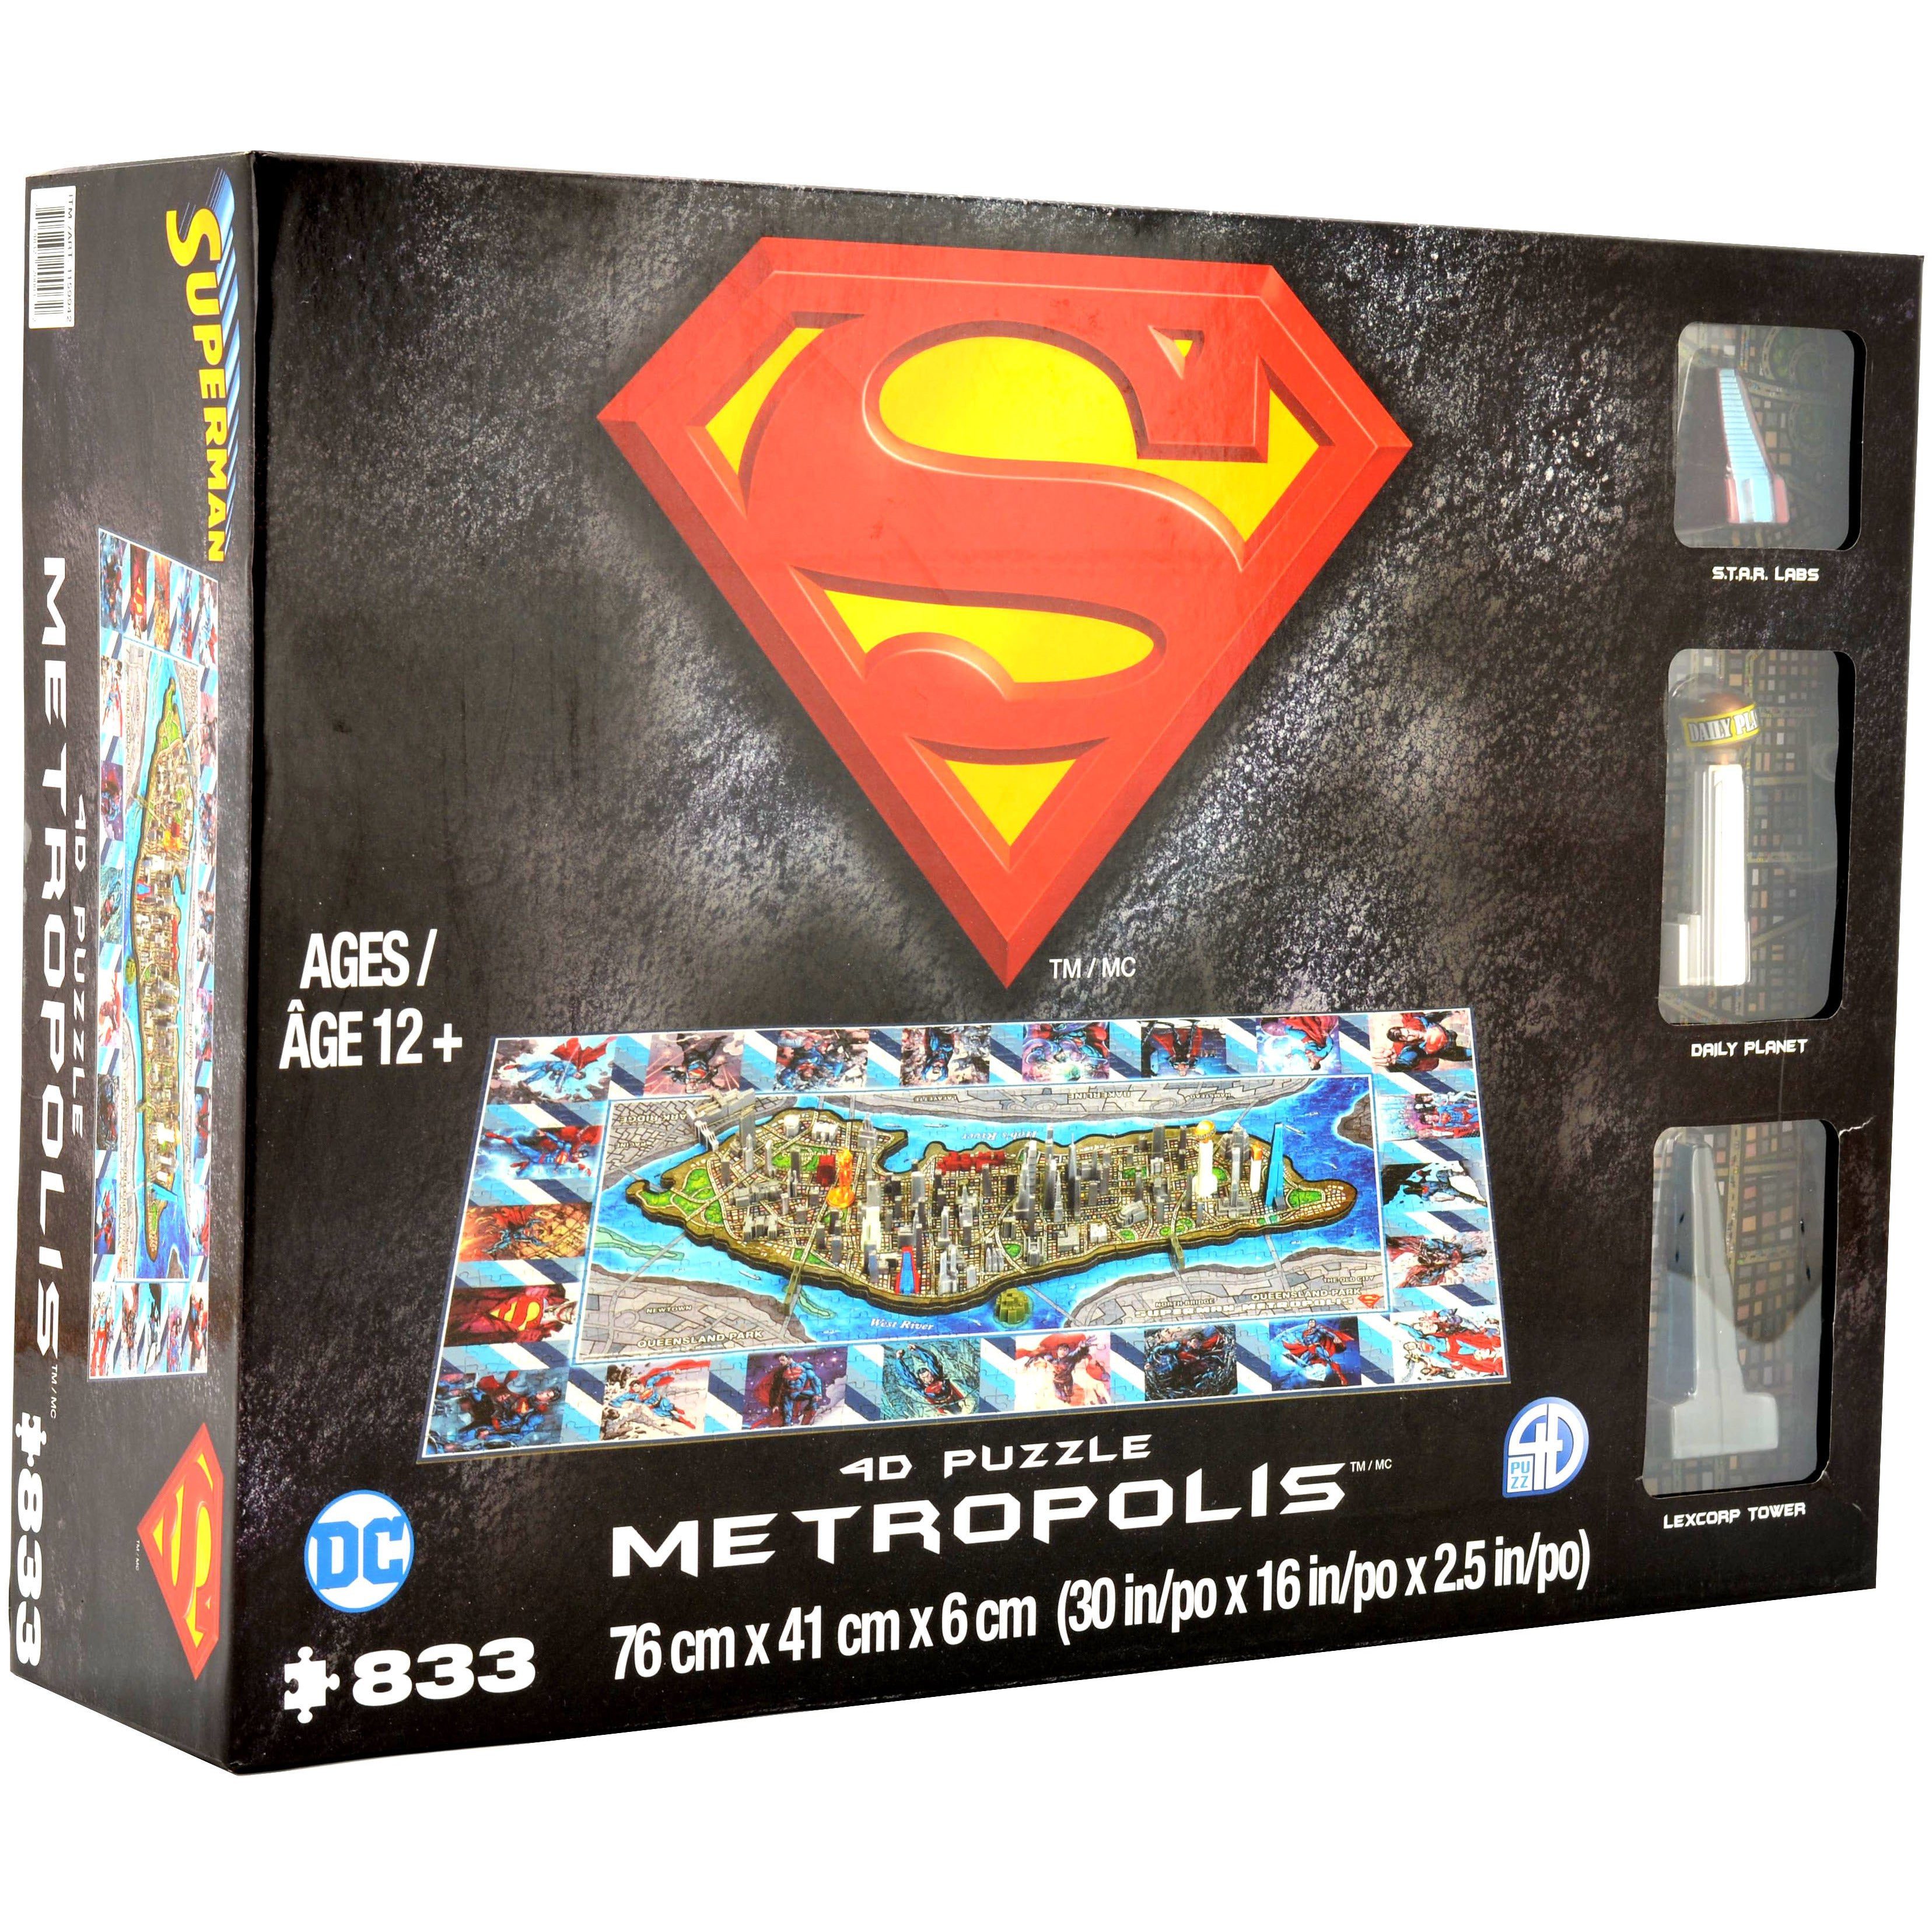 Cityscape Superman 4D Jig Saw Puzzle / Metropolis / DC Comics / Topographical Map Puzzle / 833 Piece / Ages 12+